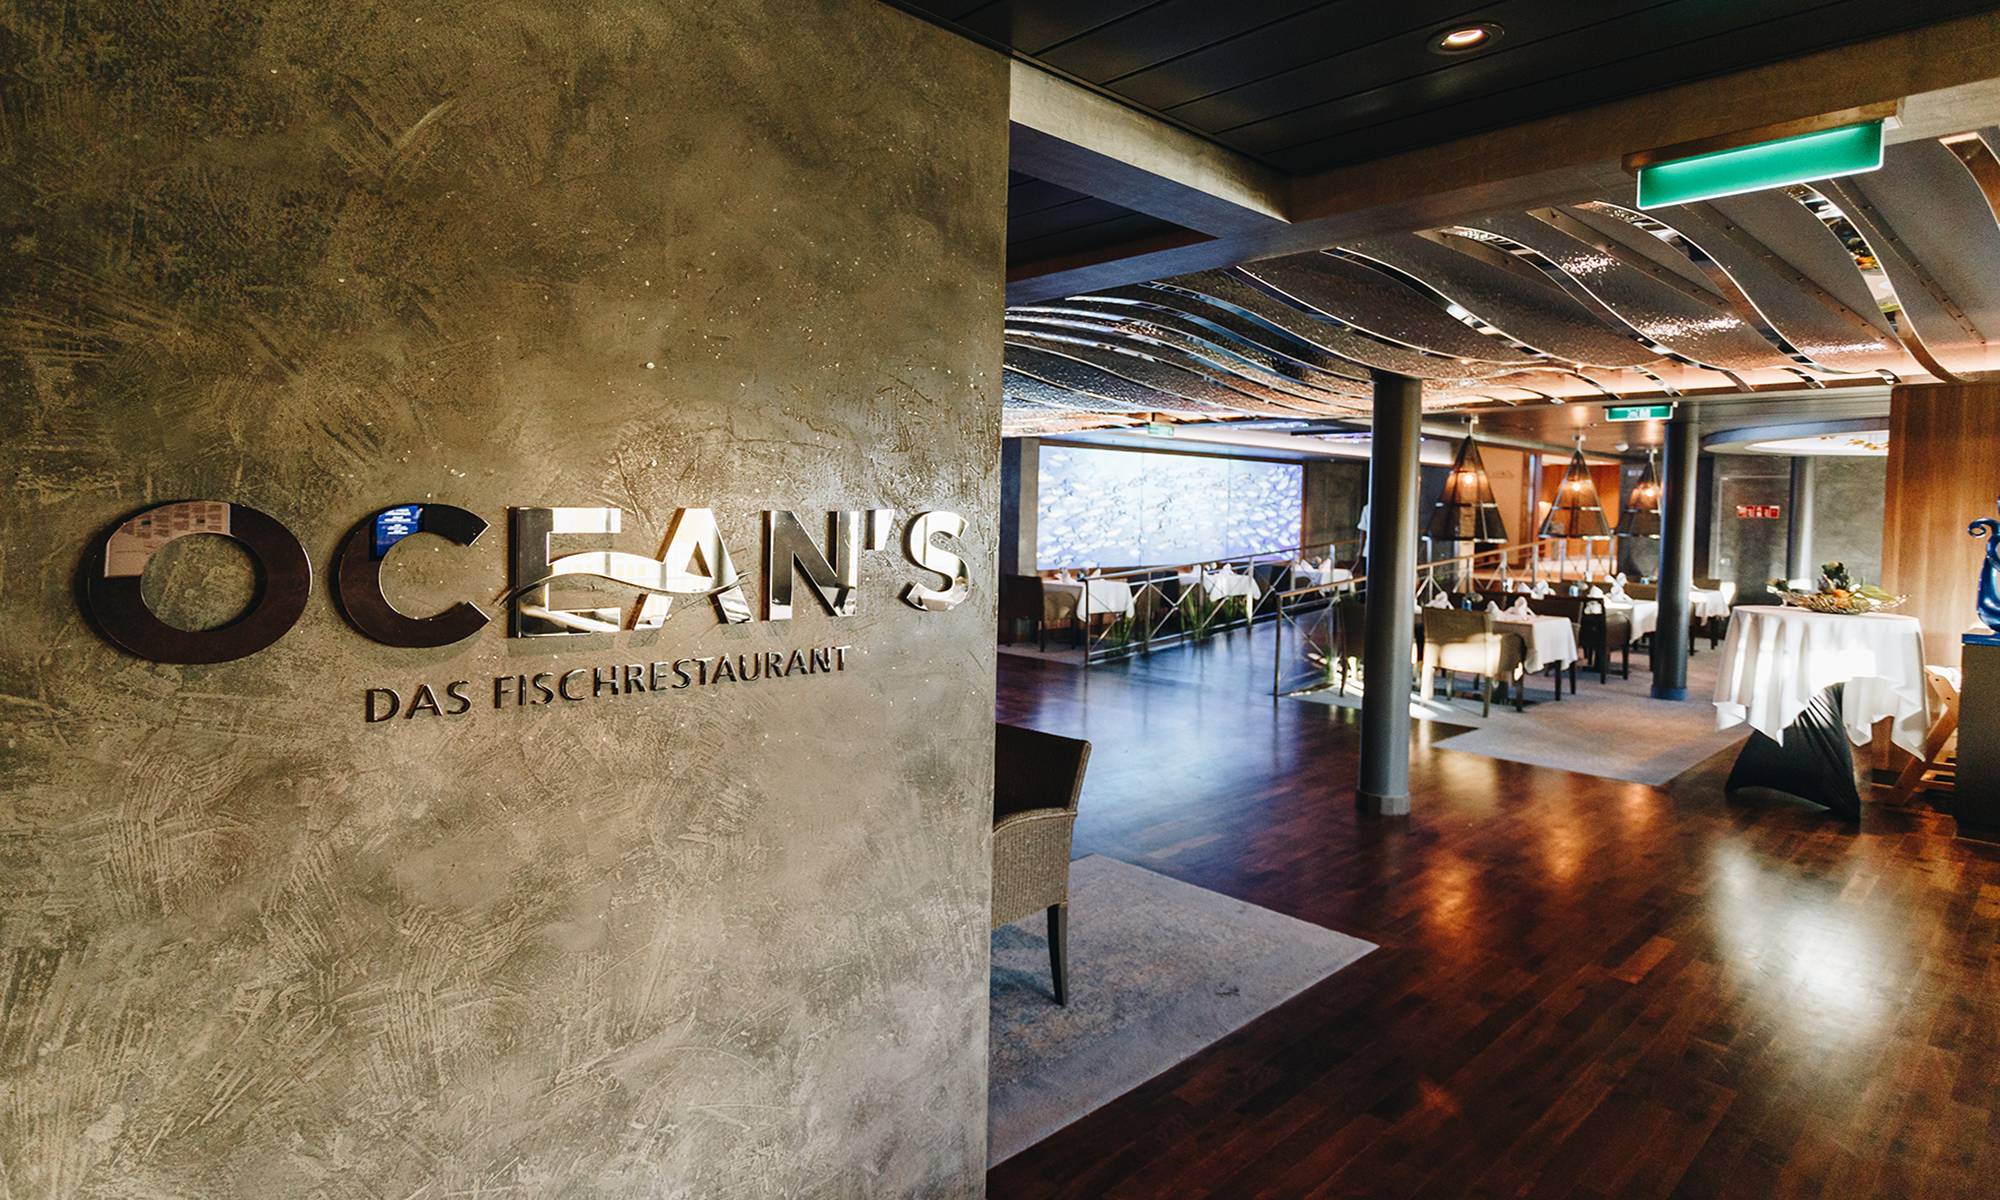 Ocean's - Das Fischrestaurant